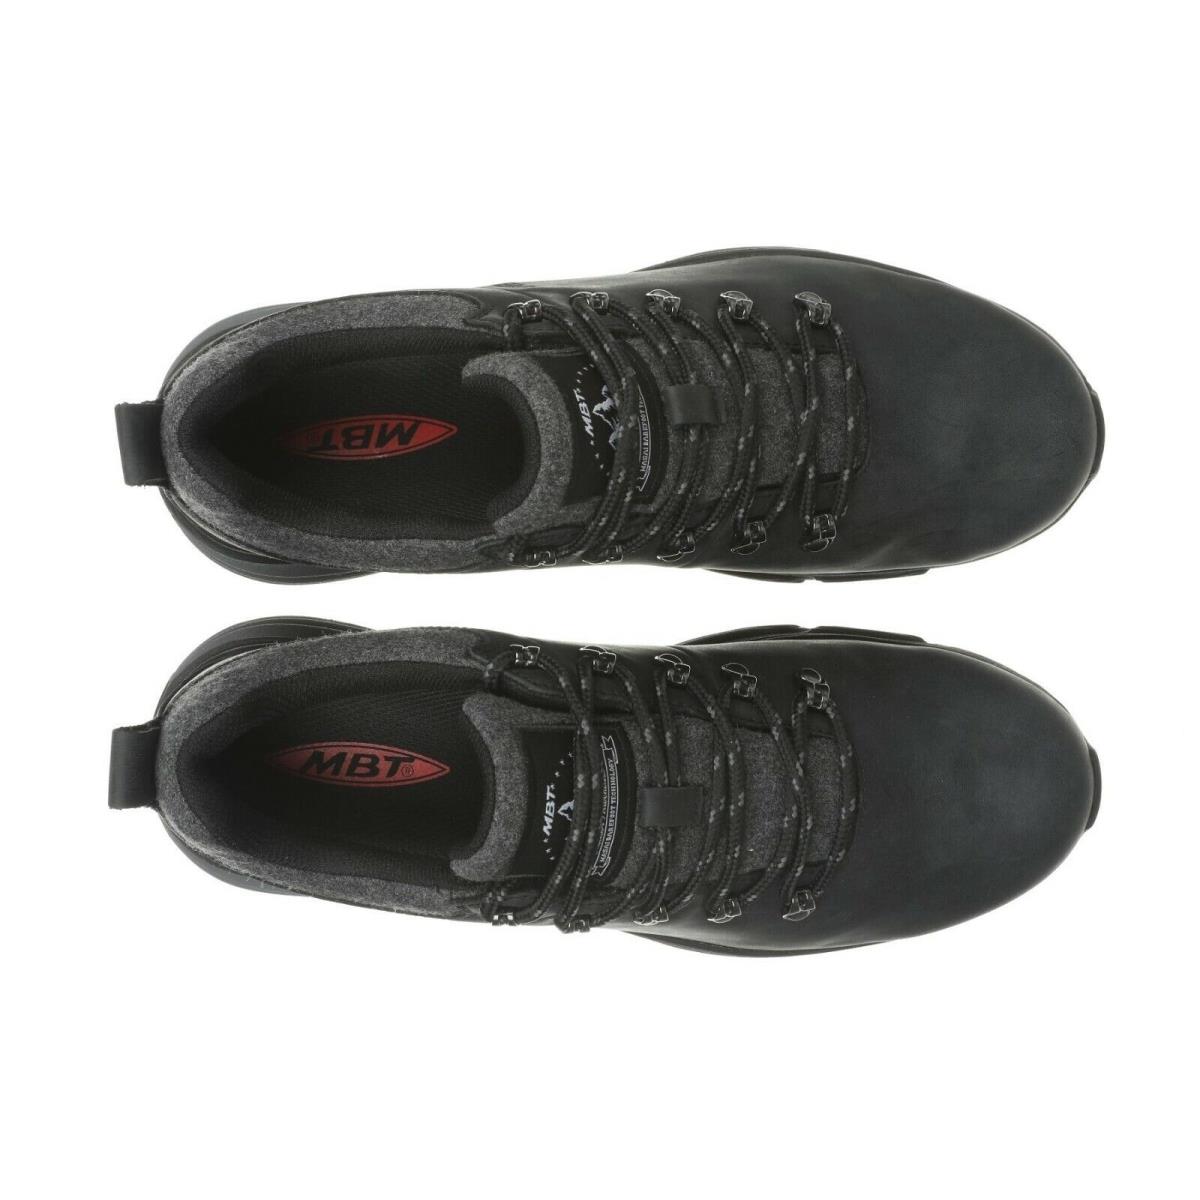 MBT shoes ALPINE - BLACK-GORE-TEX 4